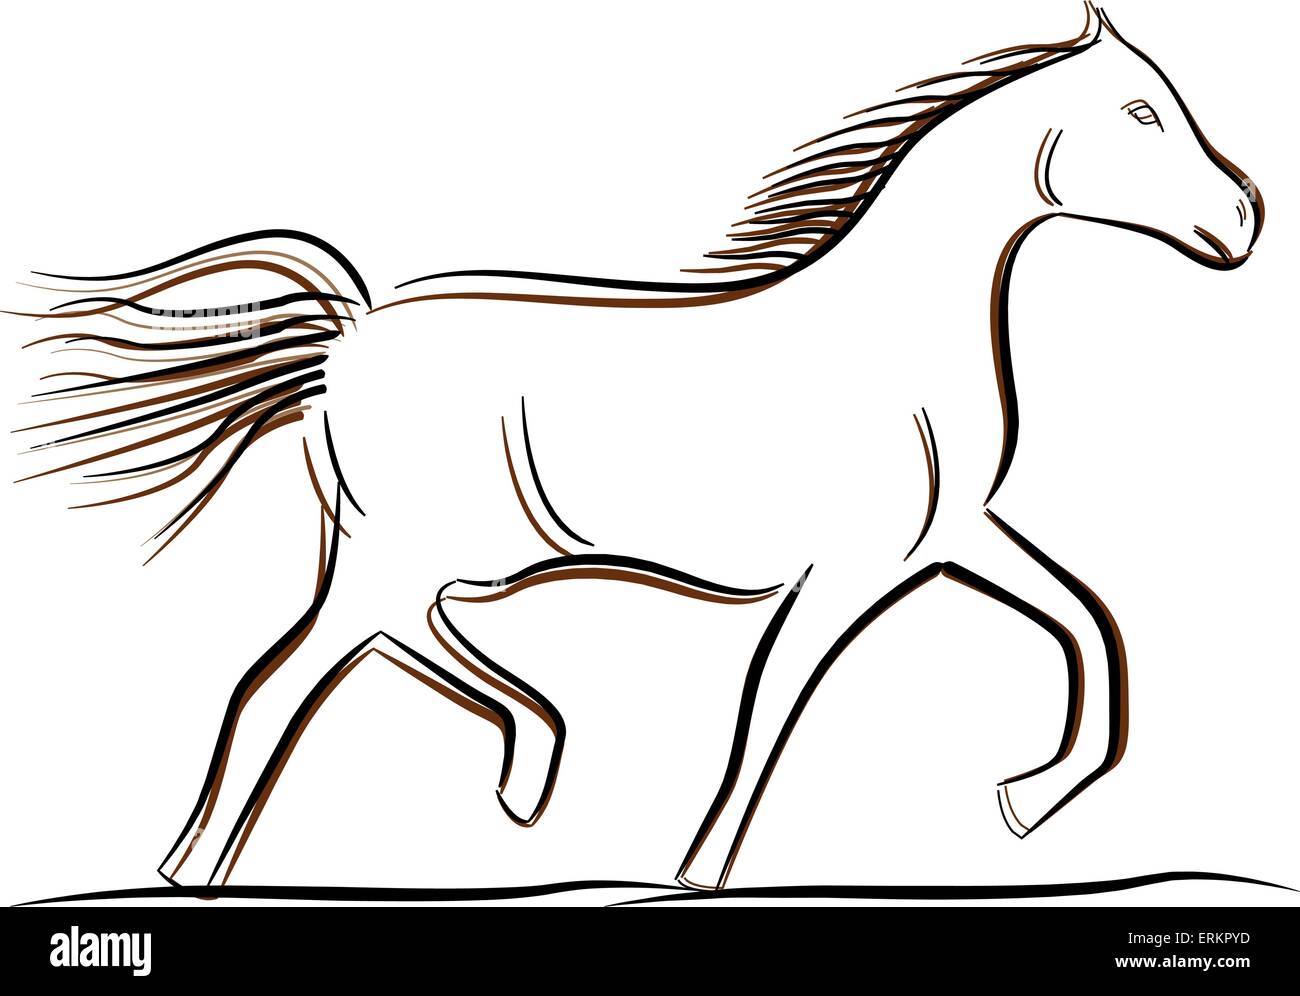 Illustrazione Vettoriale del cavallo di disegno su sfondo bianco Illustrazione Vettoriale